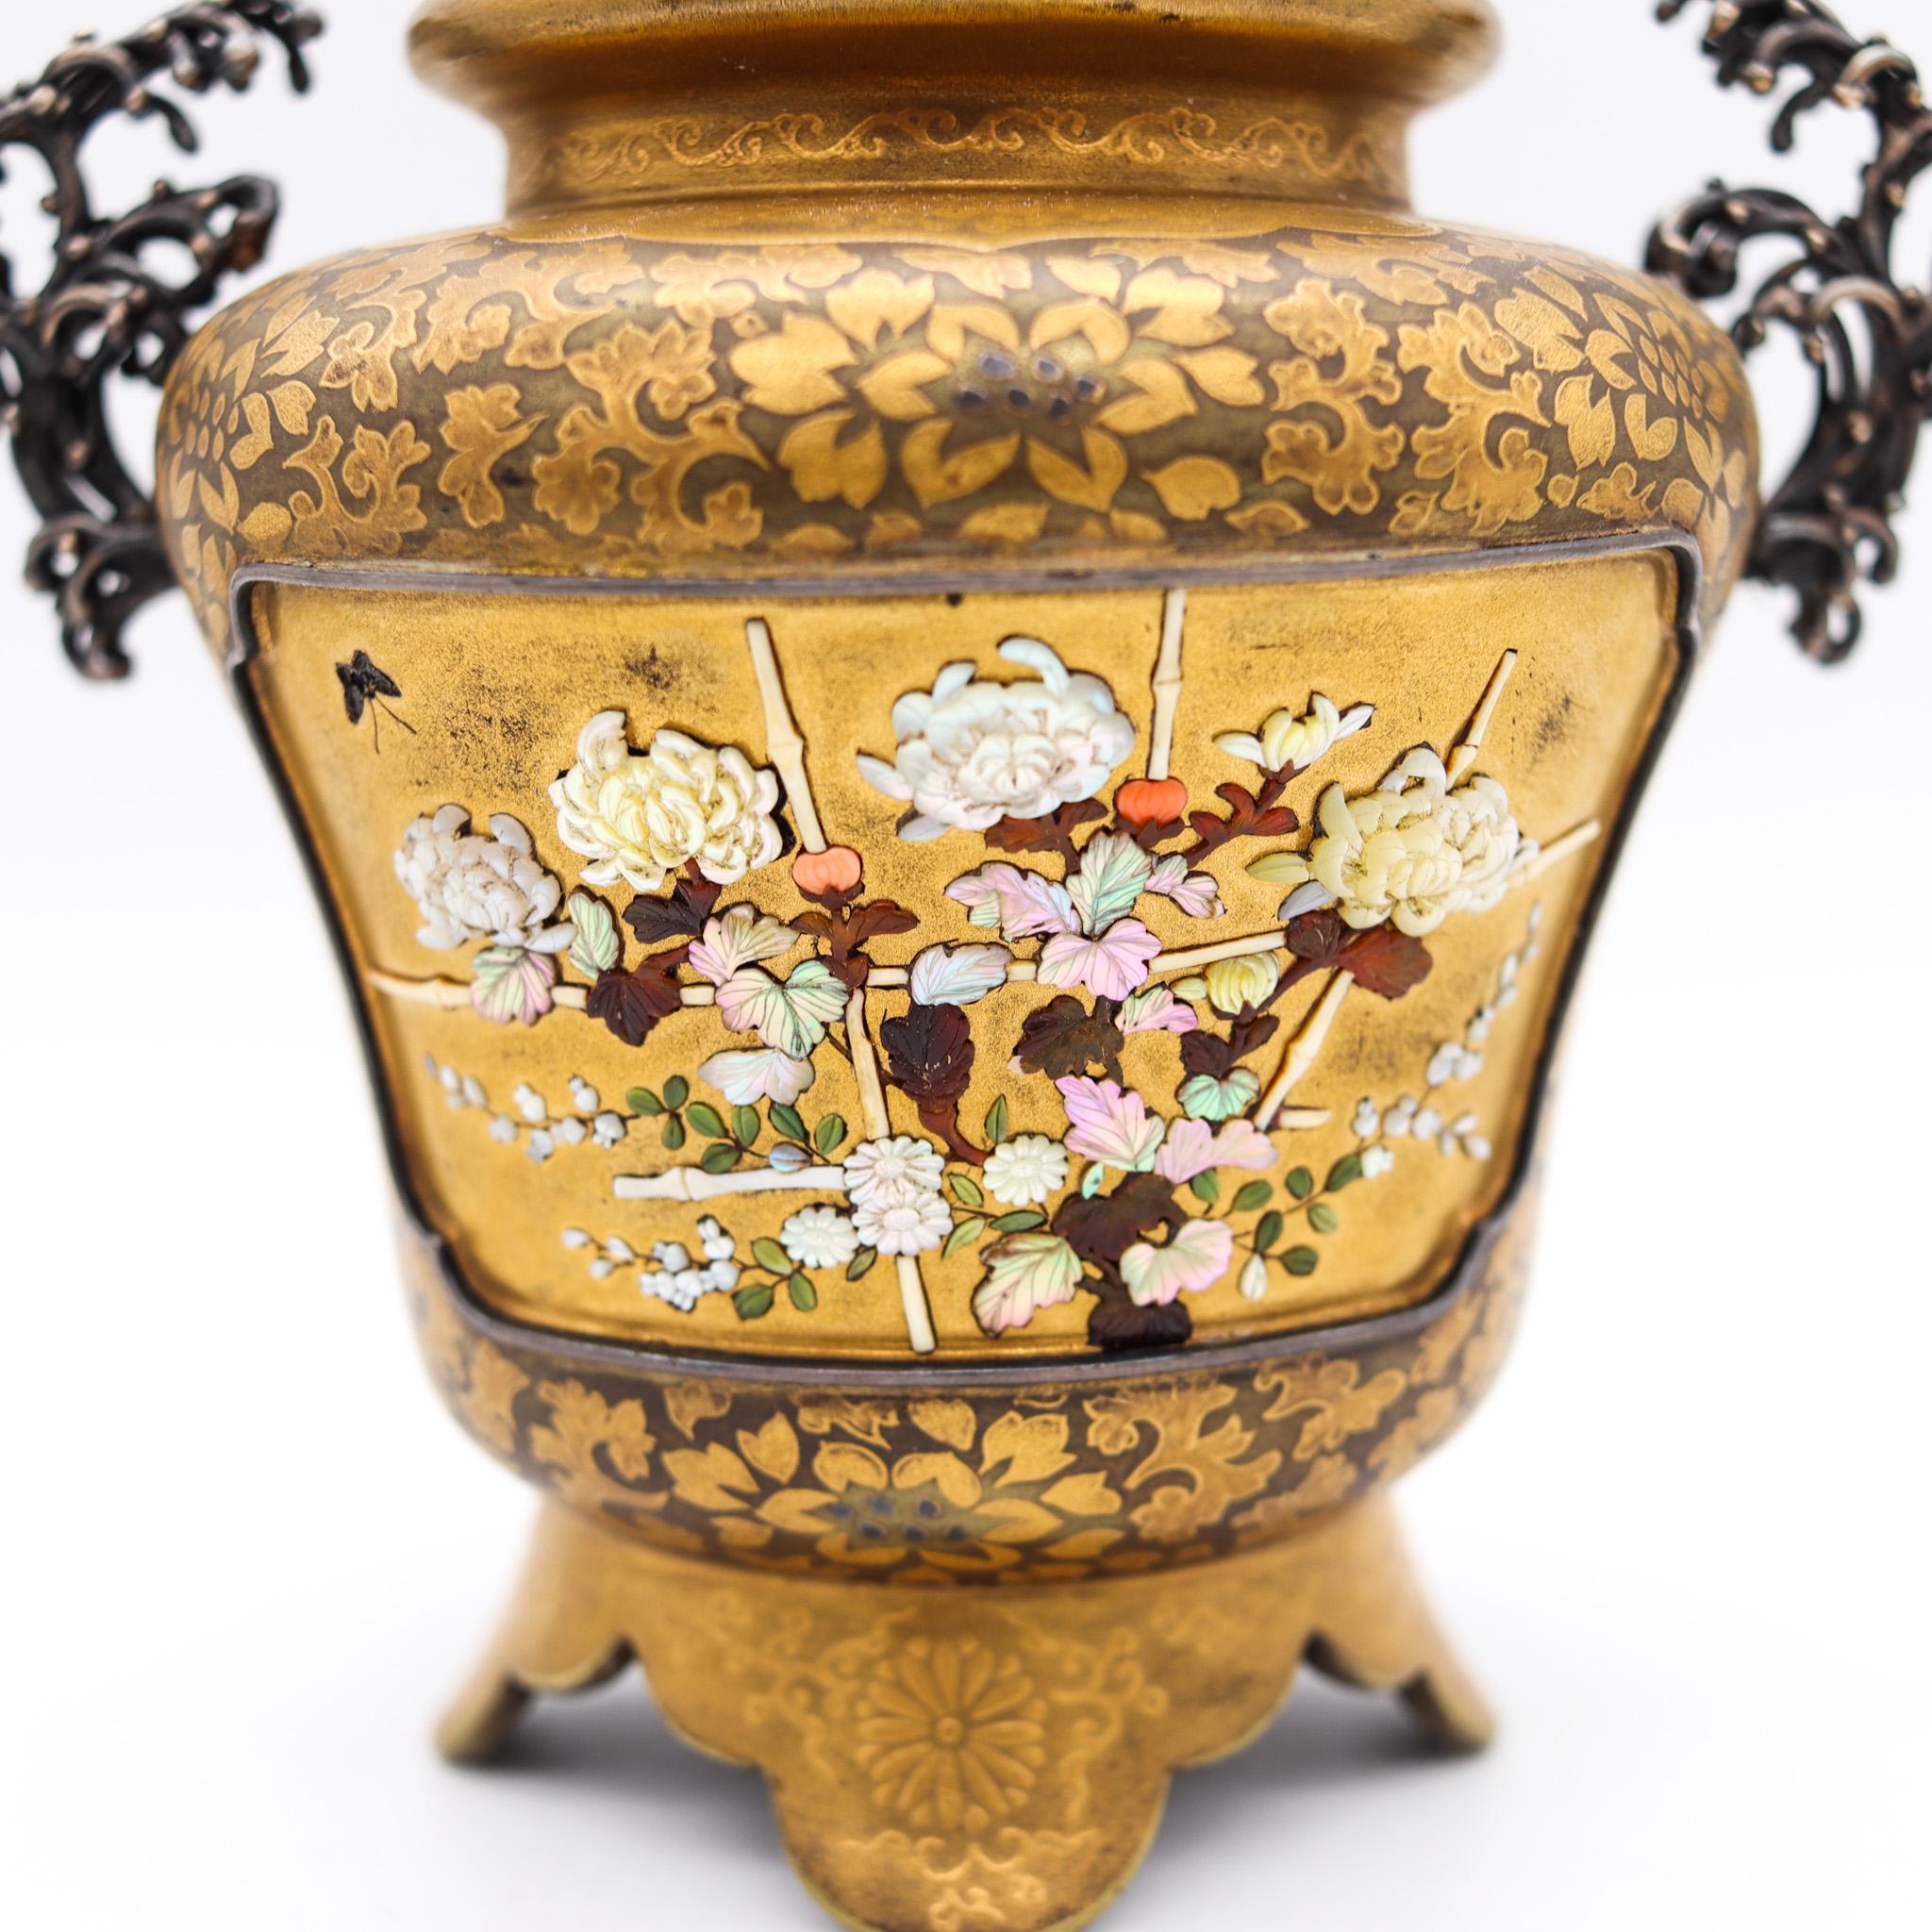 Shibayama urm aus der Meiji-Zeit (1858-1912) in Japan.

Wunderschönes Kunstwerk, geschaffen im kaiserlichen Japan während der Meiji-Zeit, ca. 1890. Diese kleine Urne mit Deckel ist aus vergoldetem Holz, Shibayama-Platten und Sterlingsilber